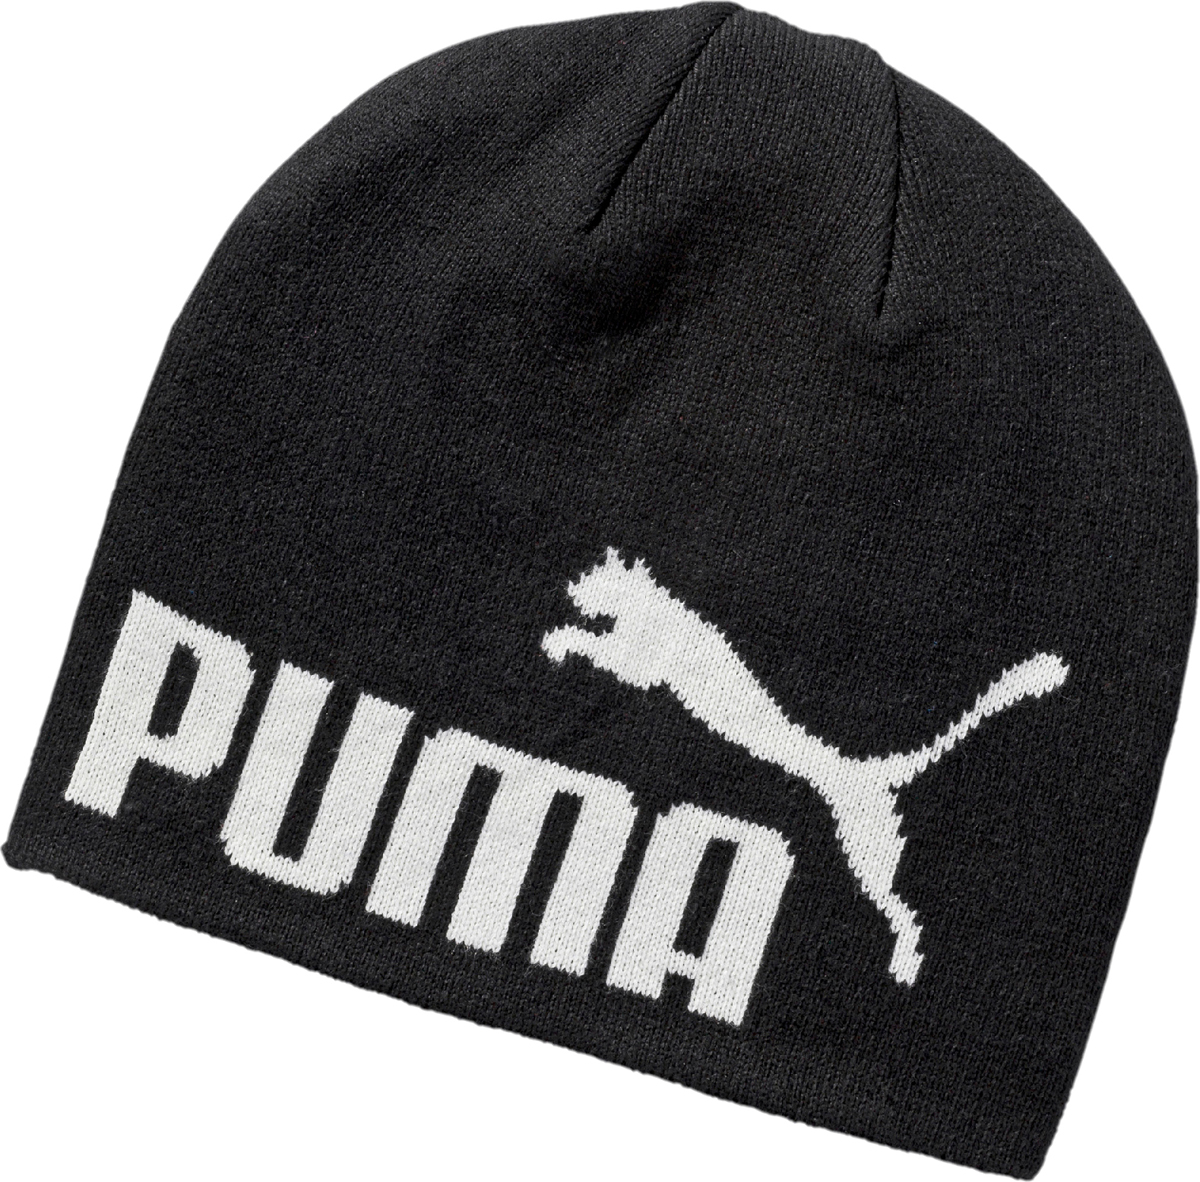 Шапка Puma Ess Big Cat Beanie, цвет: черный. 05292515. Размер универсальный